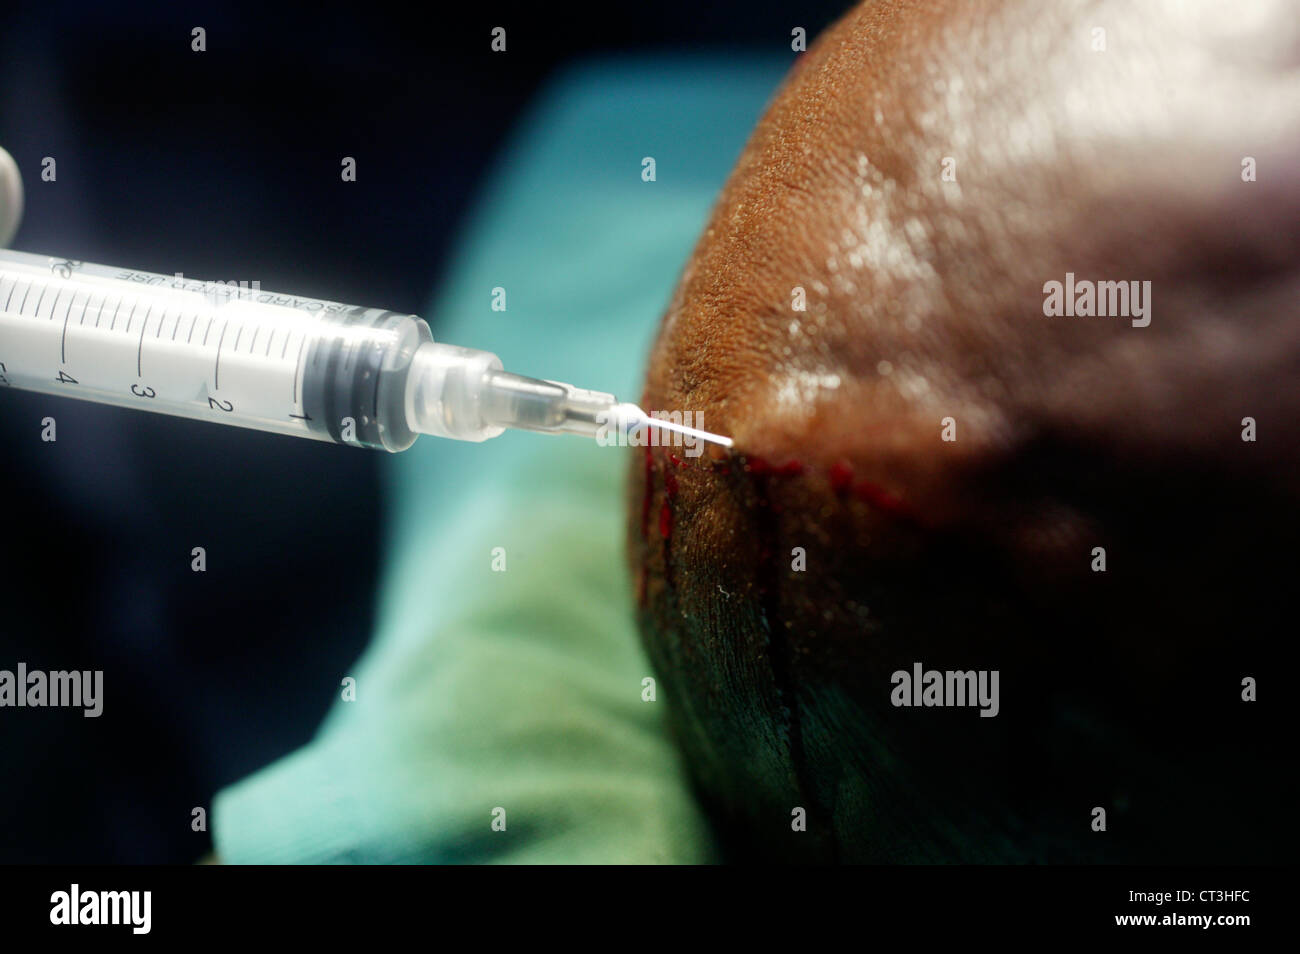 Un cirujano inyecta un cuero cabelludo del paciente con anestésico local y adrenalina, antes de hacer una incisión. Foto de stock